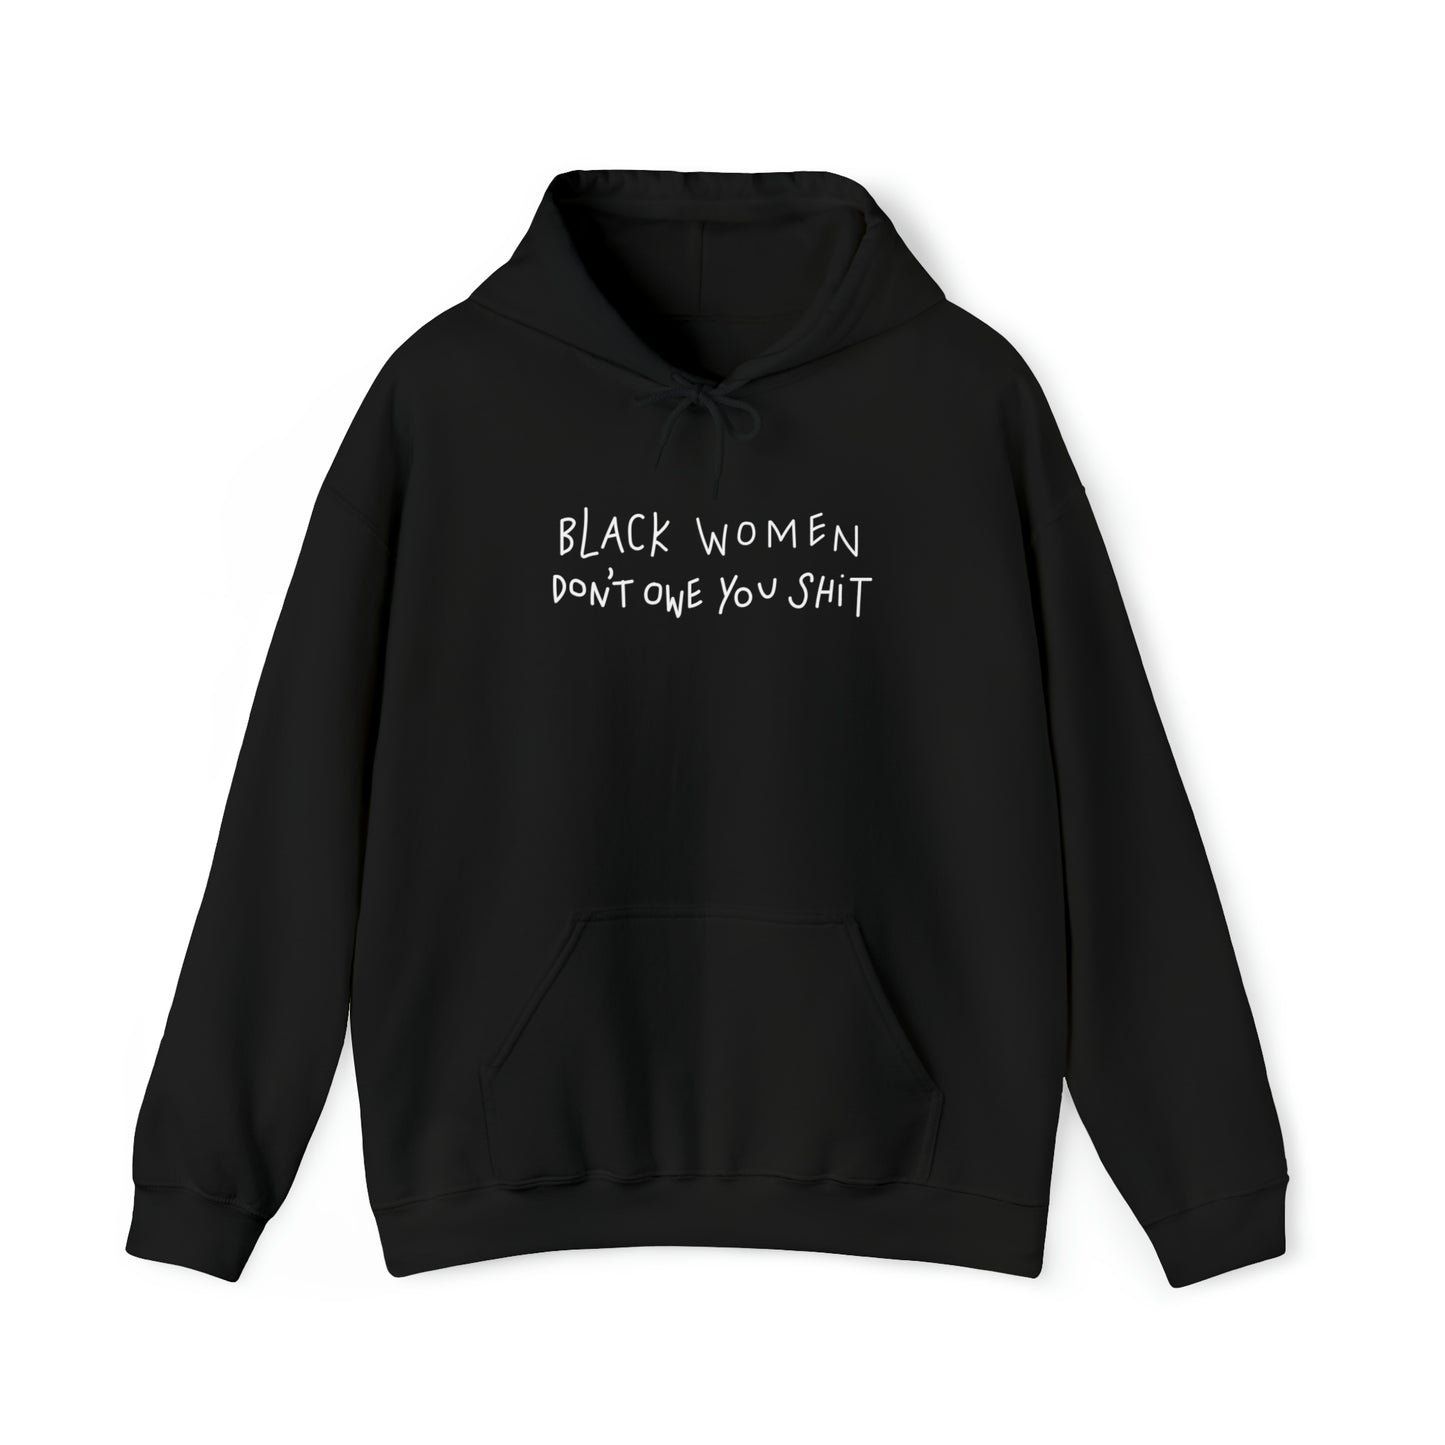 Black Women Don't Owe You Shit - Hooded Sweatshirt